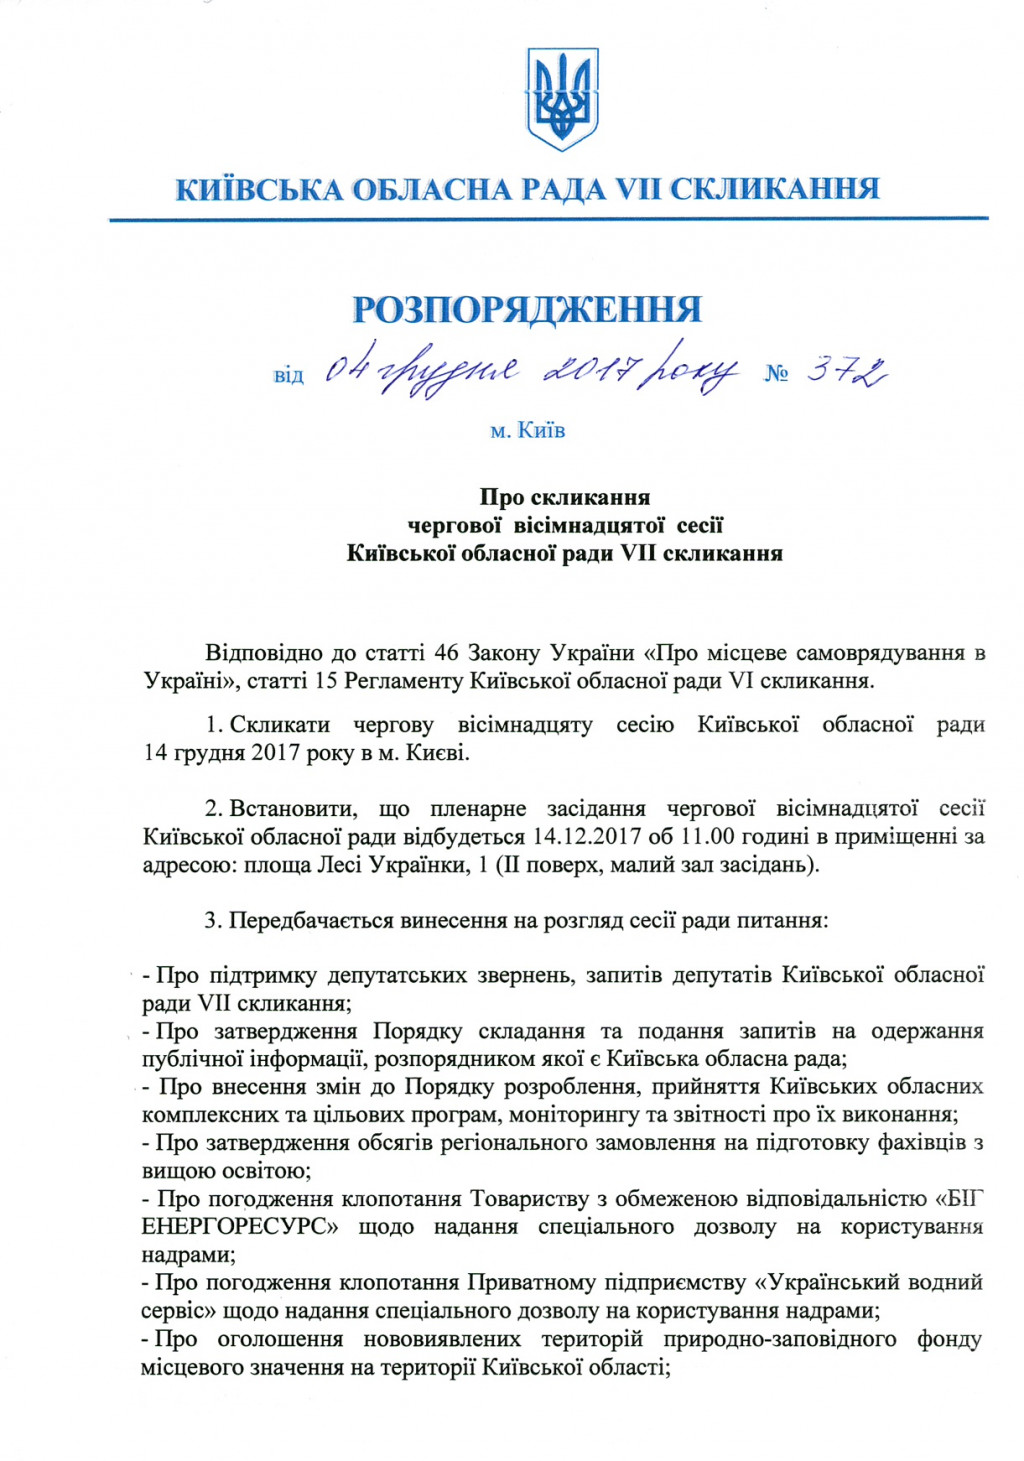 Киевоблсовет рассмотрит бюджет столичного региона 14 декабря